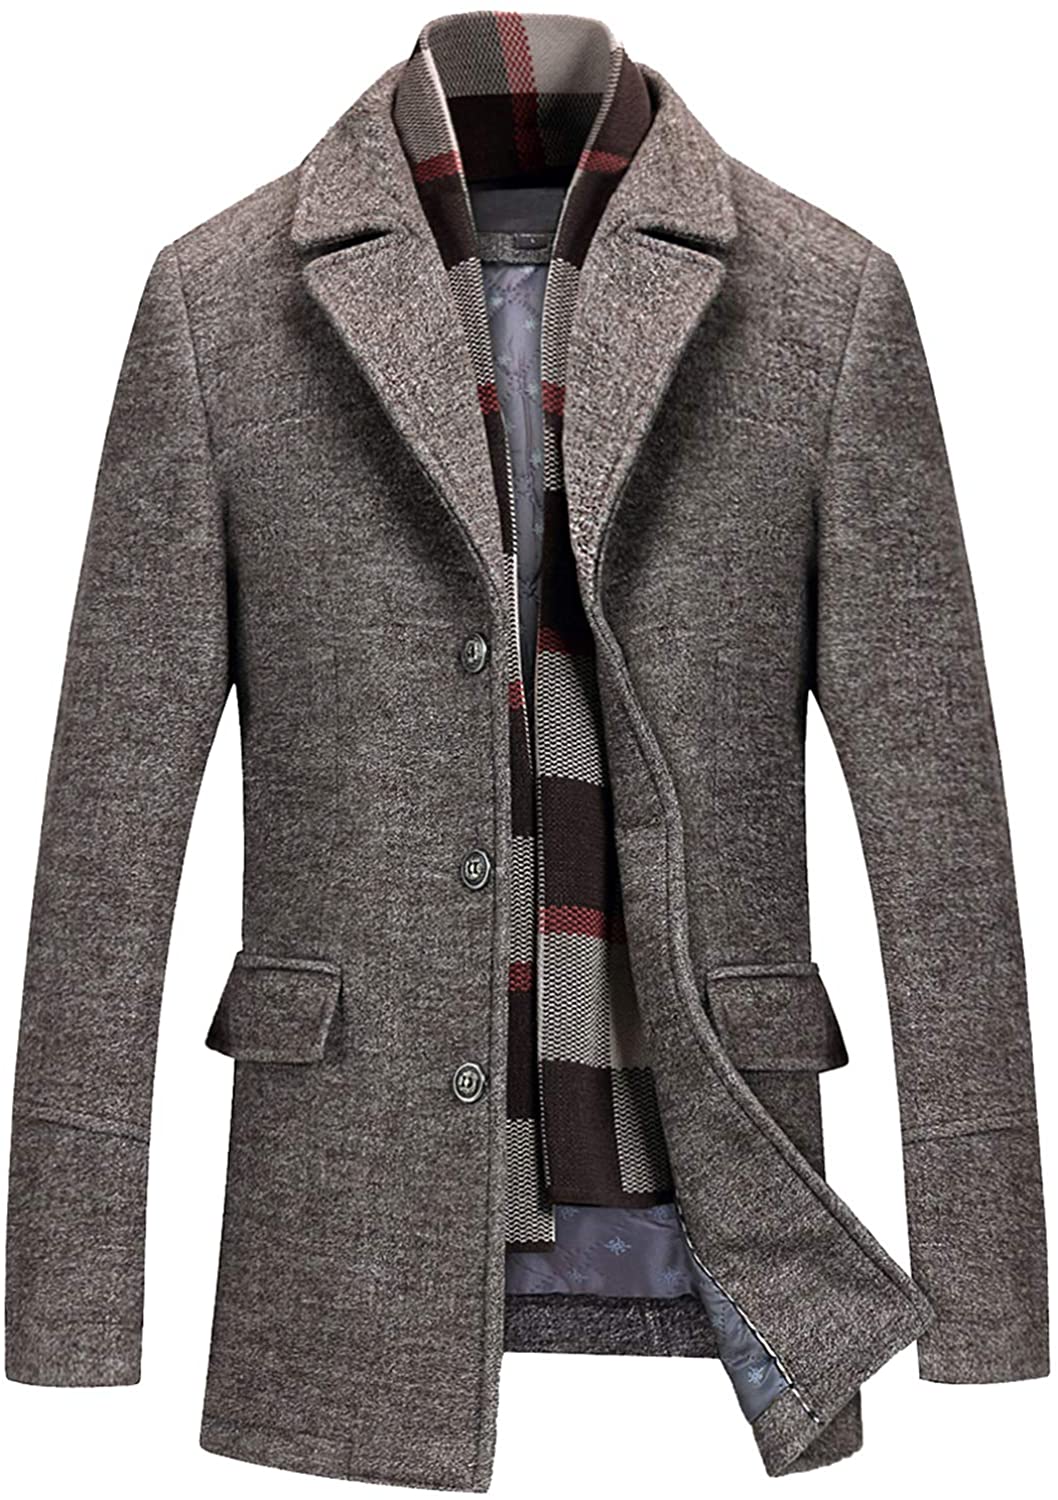 PRIJOUHE Men's Wool Coat Winter Coat Slim Medium Long Coats Overcoat ...